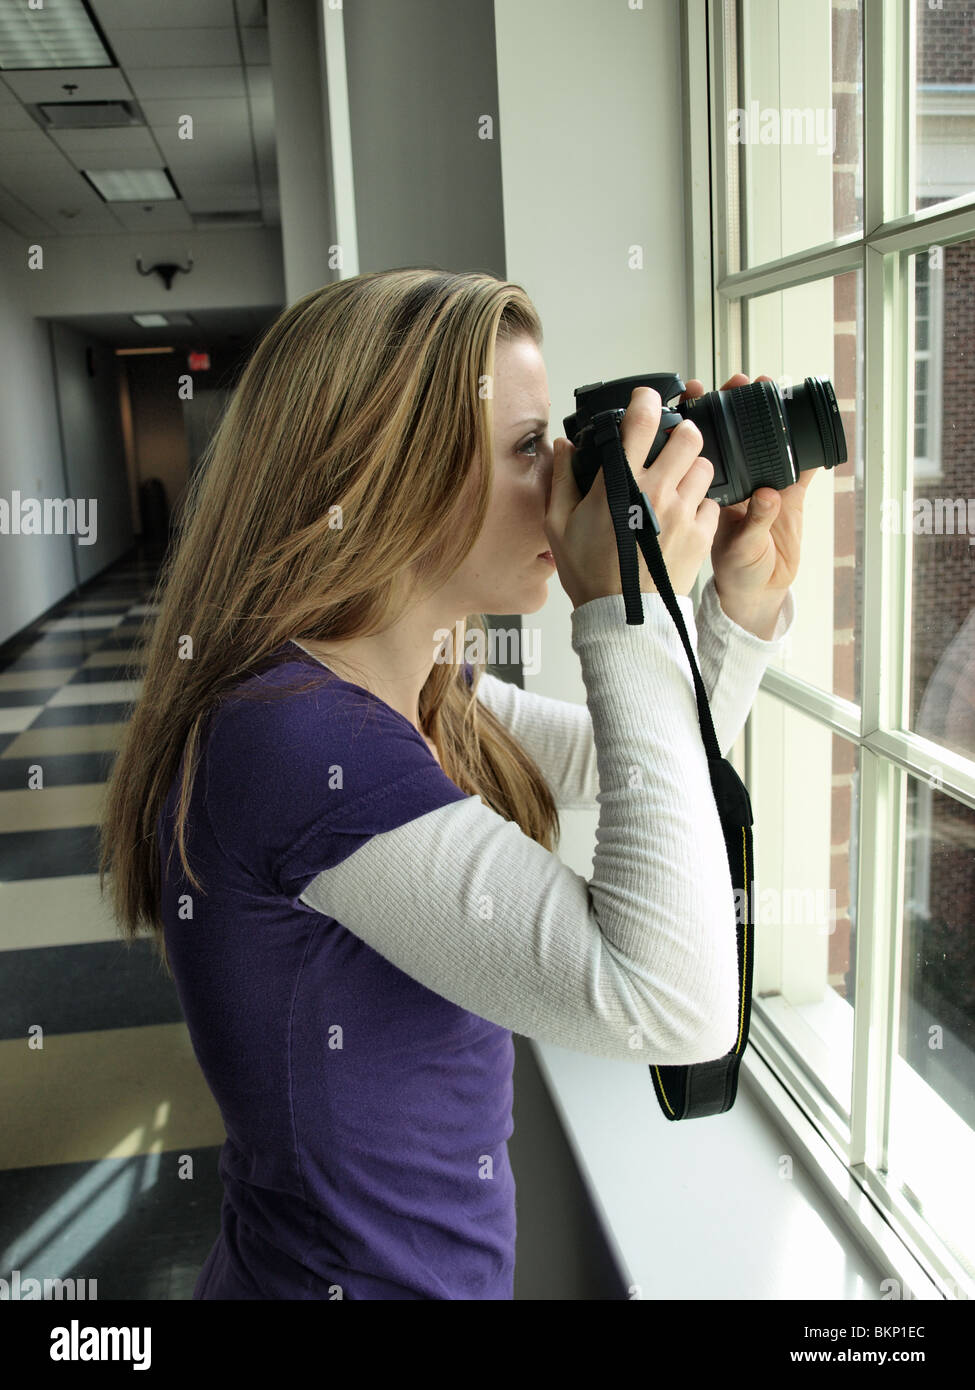 weibliche Frau Fotograf fotografieren Fotos mit einem schwarzen SLR Digitalkamera Aktion Sucher Stockfoto